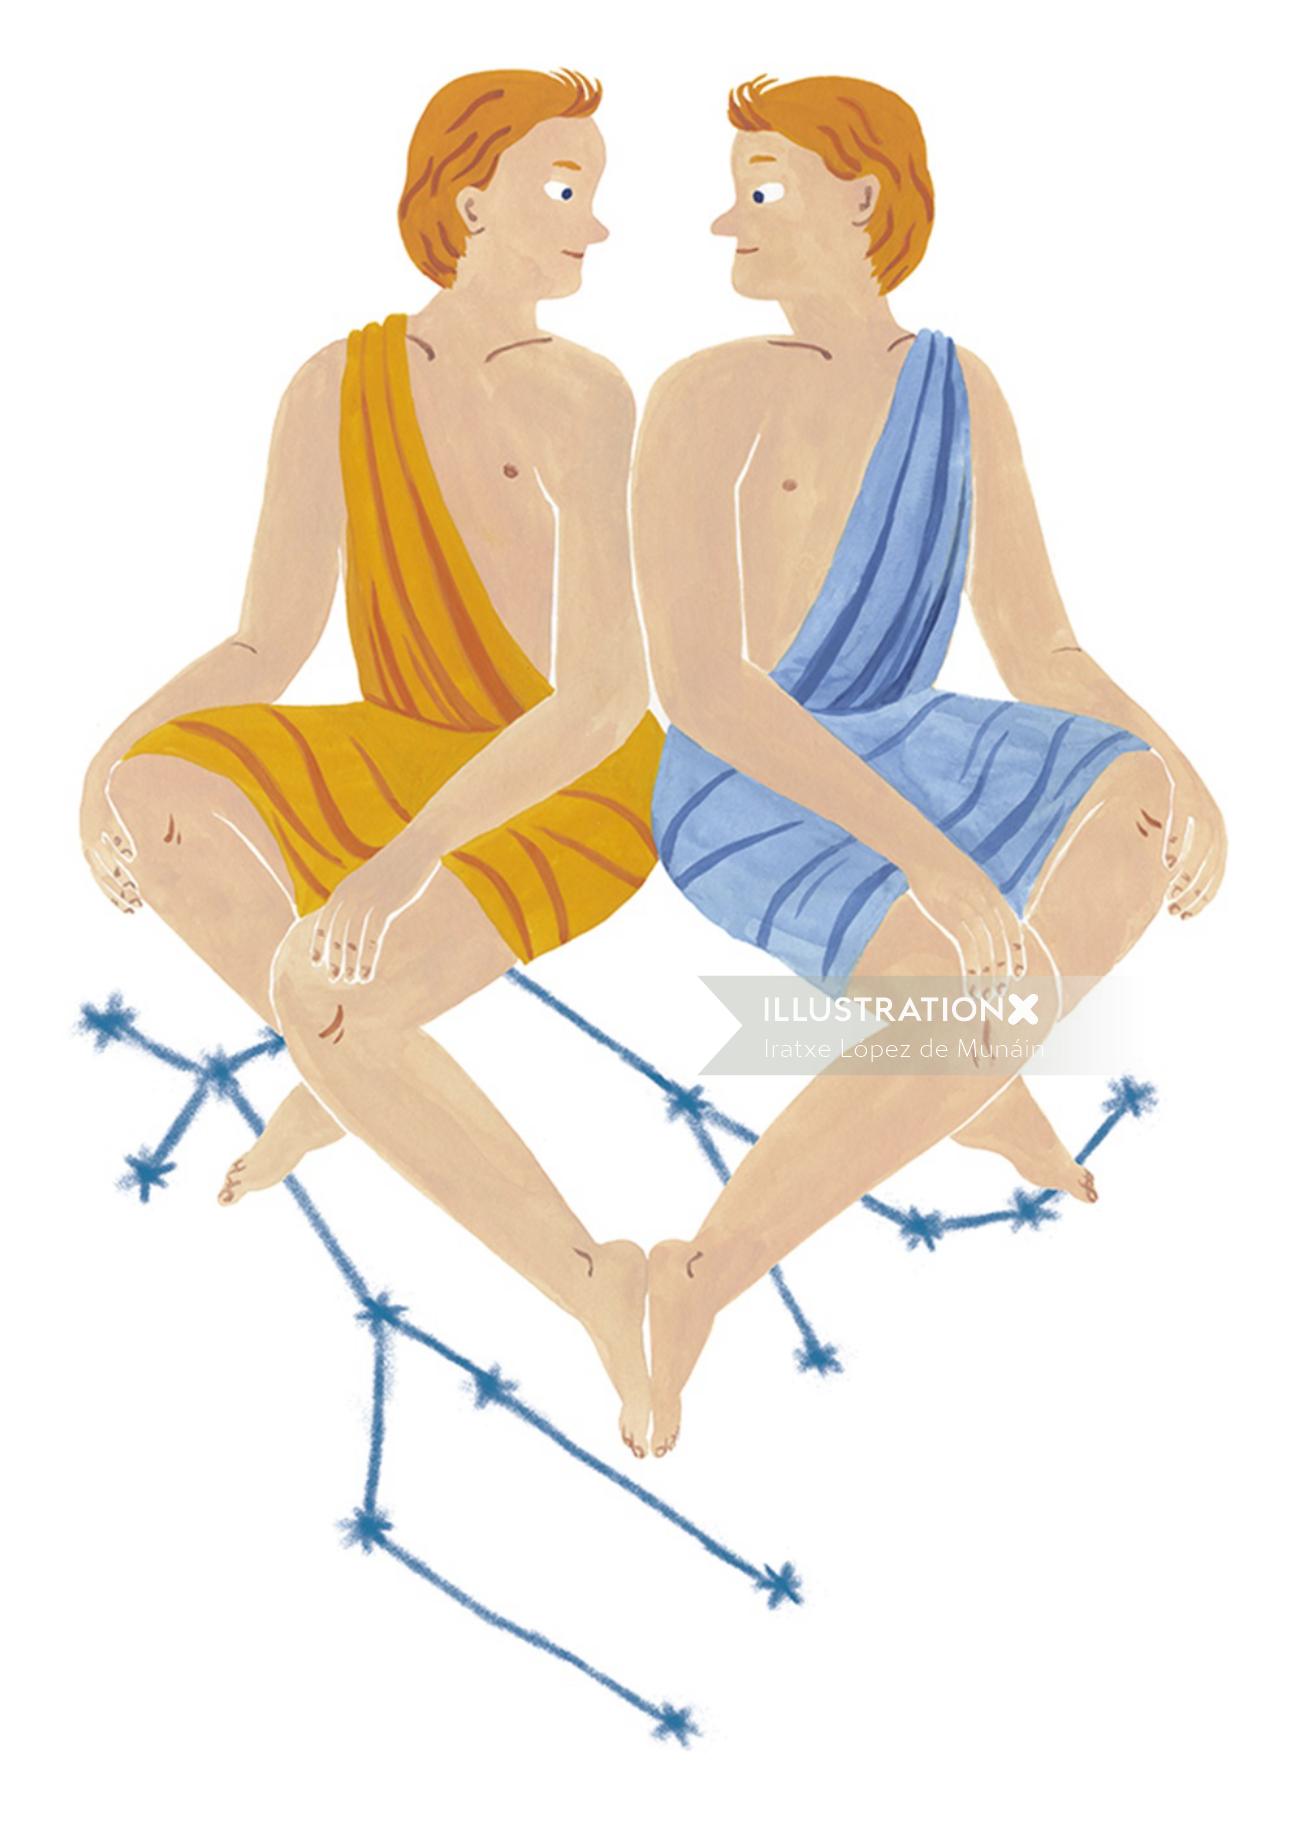 Zodiac boys sitting together